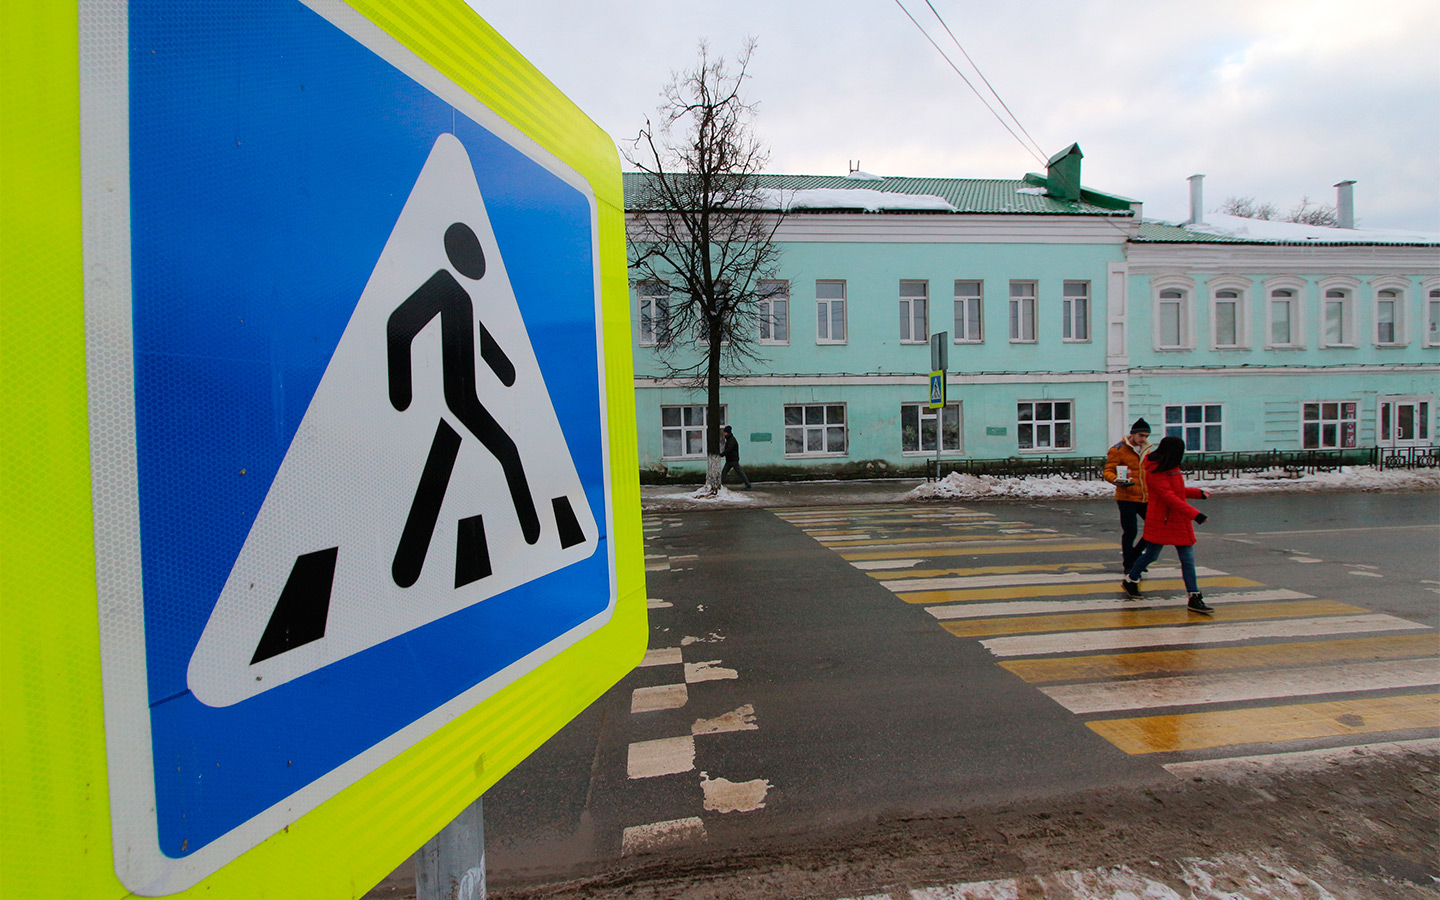 Пешеходный знак фото: Знак "Пешеходный переход" — картинки, действие знака надземного и подземного перехода, а также зебры для пешеходов